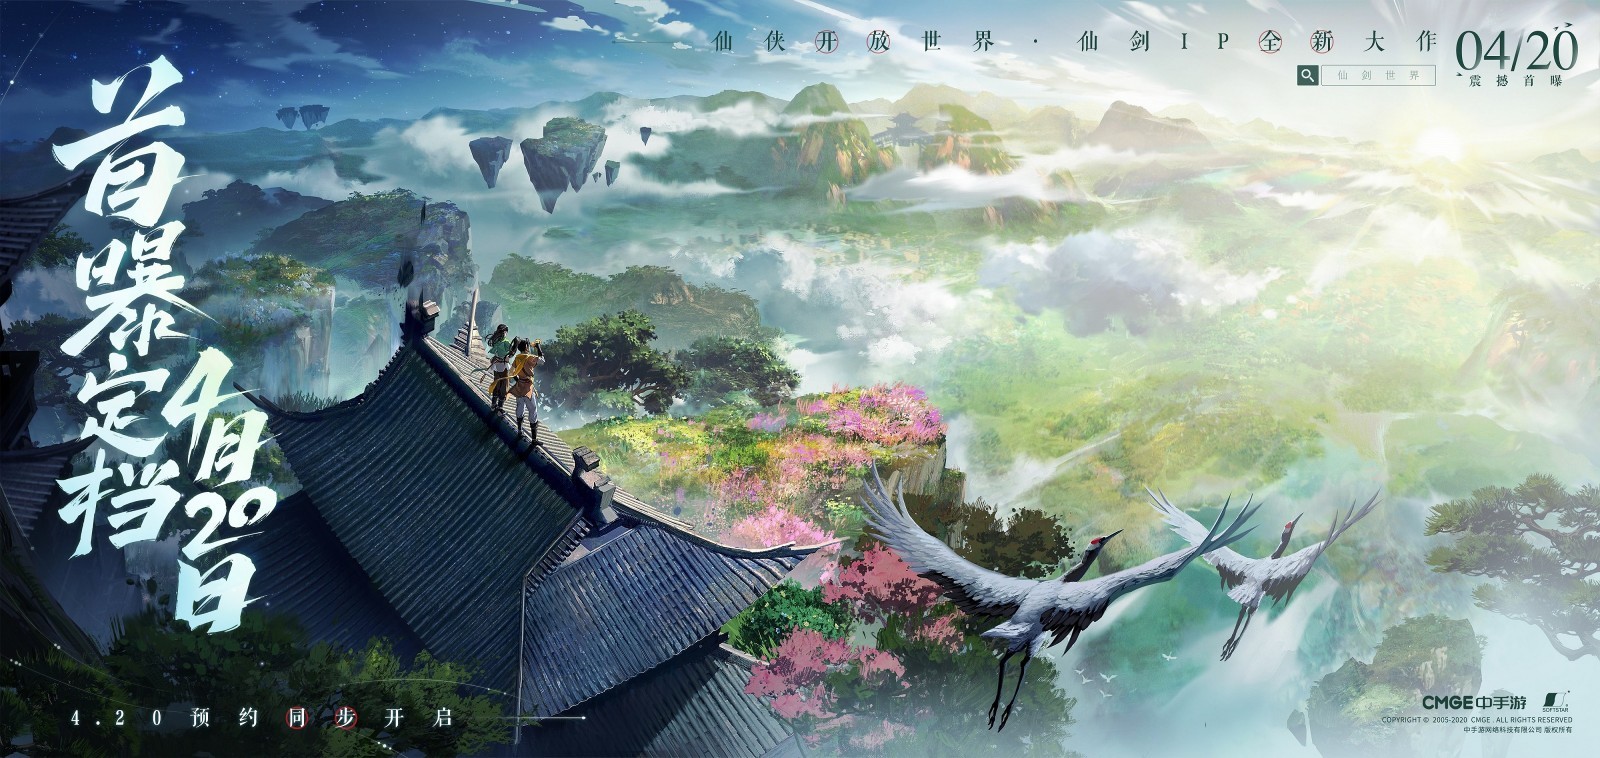 开放世界元宇宙游戏《仙剑世界》4月20日发布概念PV 二次世界 第3张